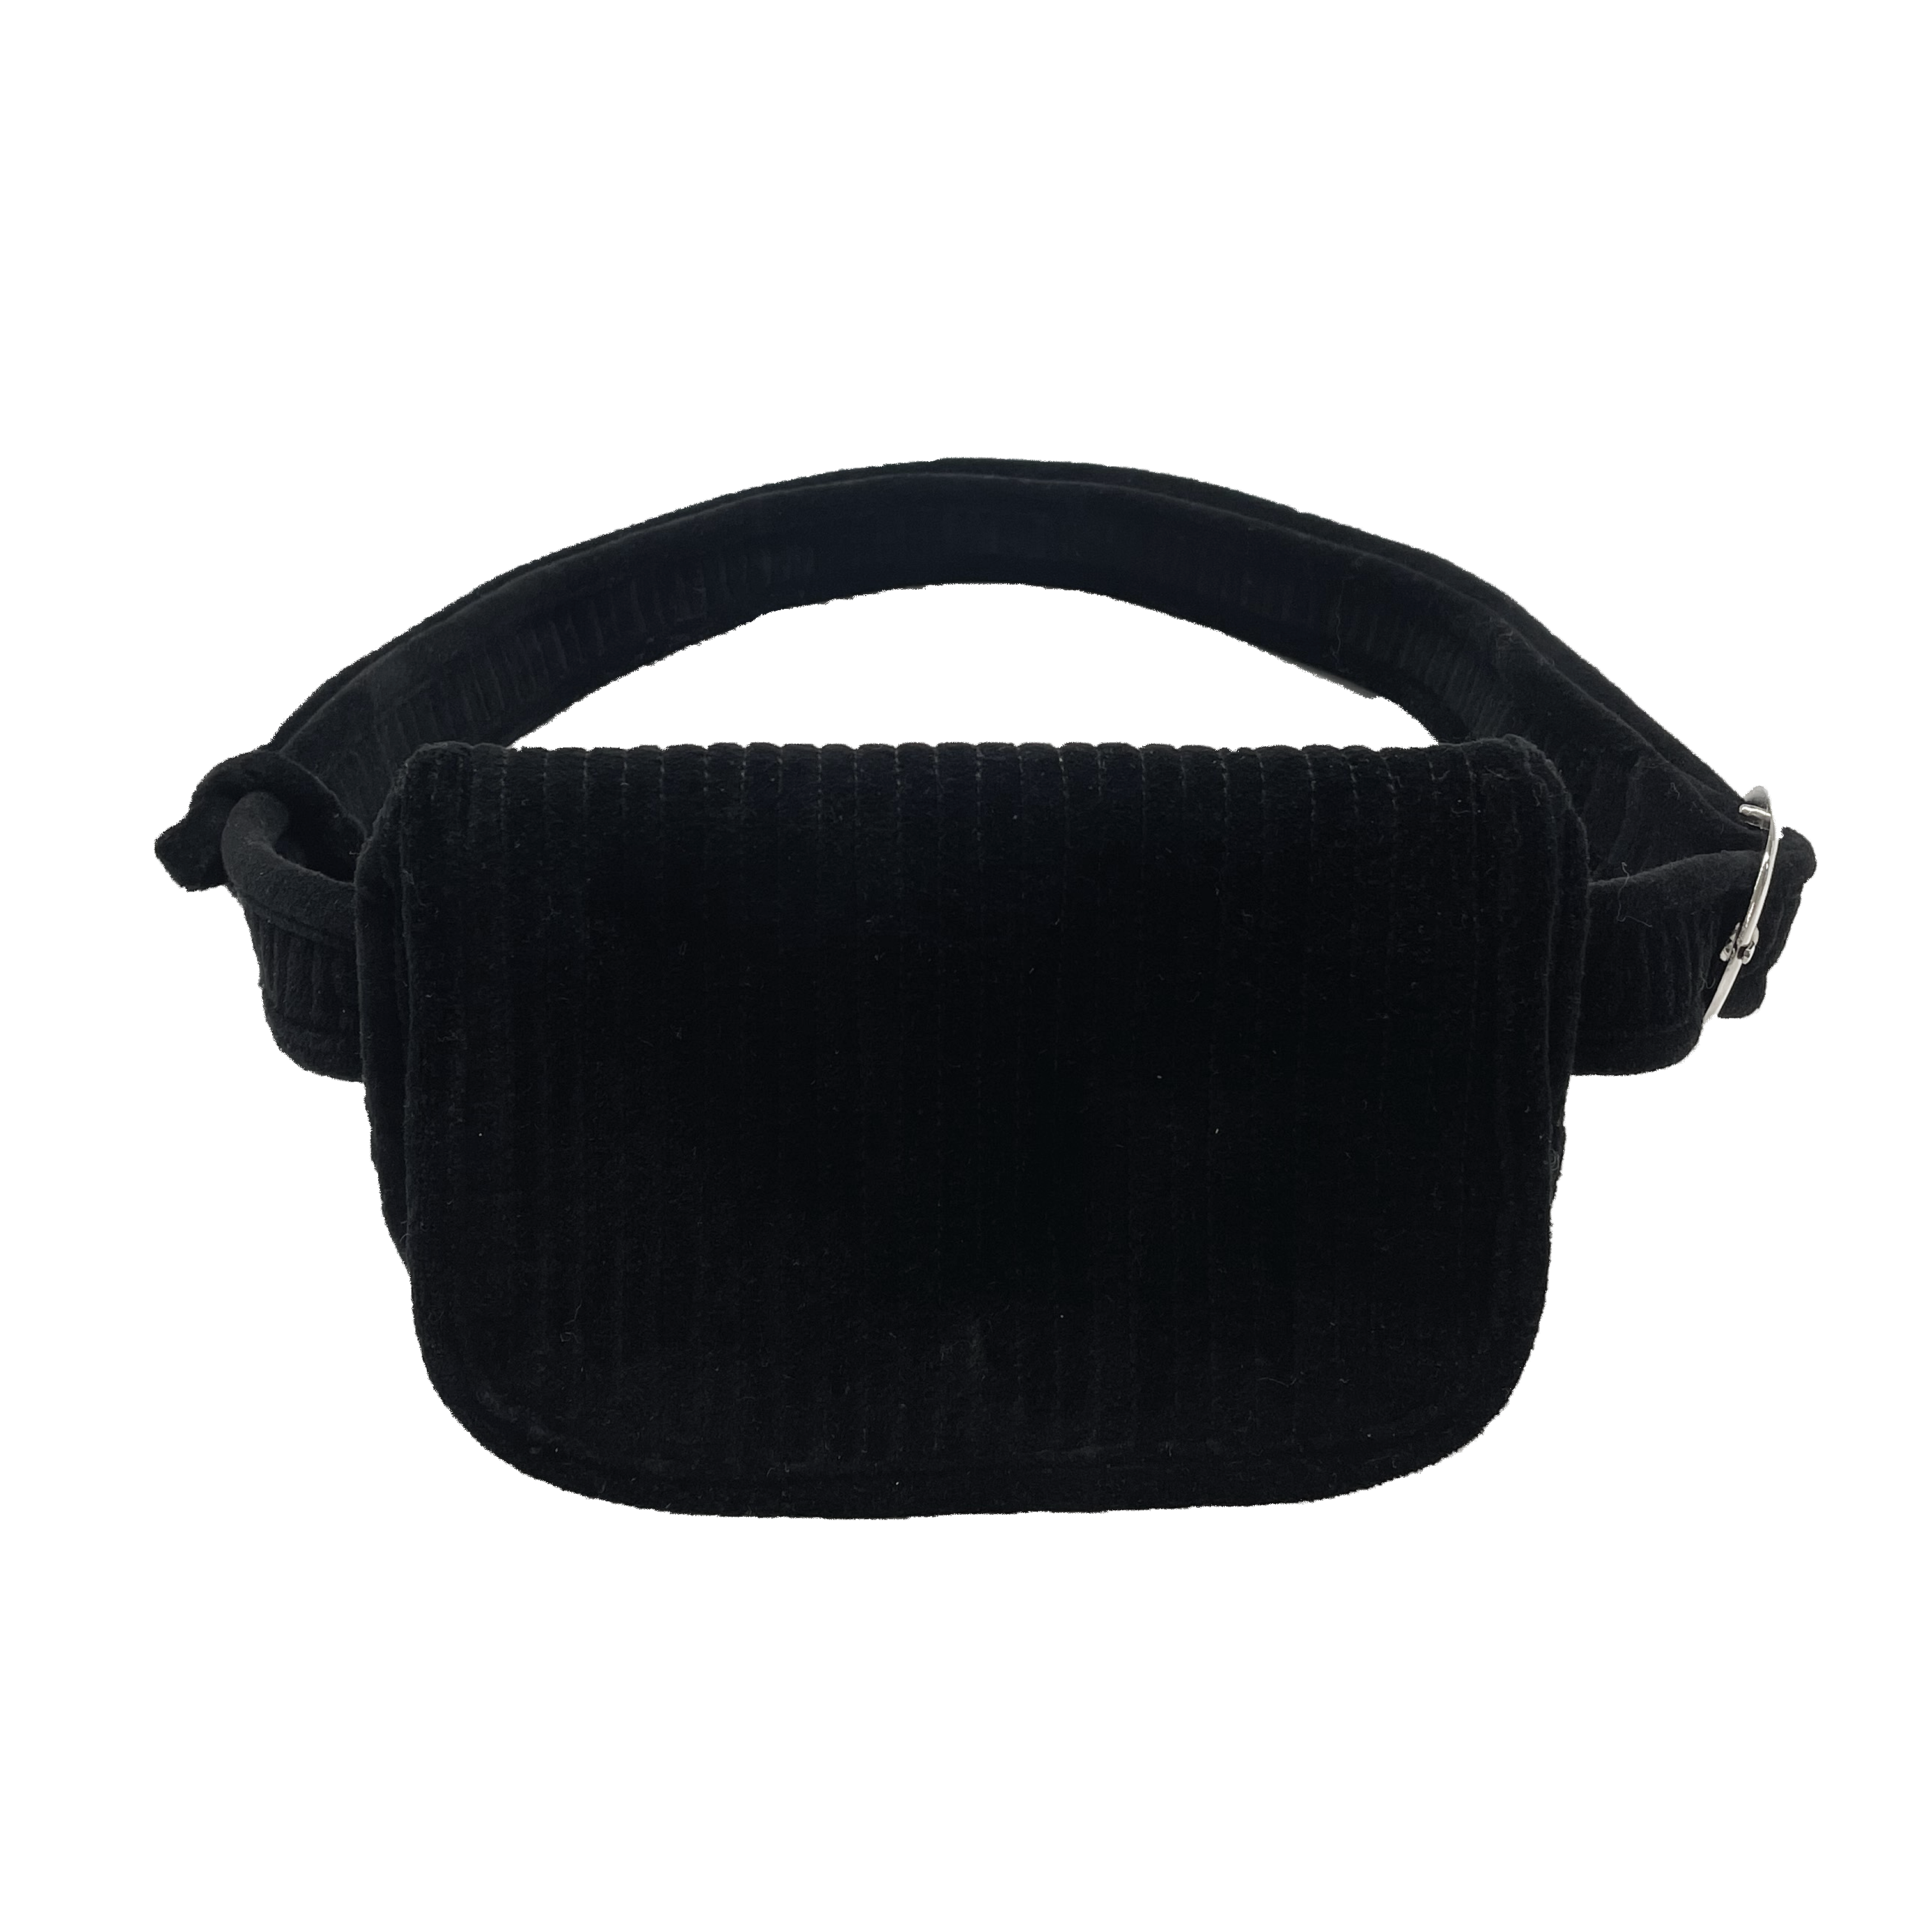 NEW Quilted Velvet Adjustable Belt Bag - Black - Quilted Koala